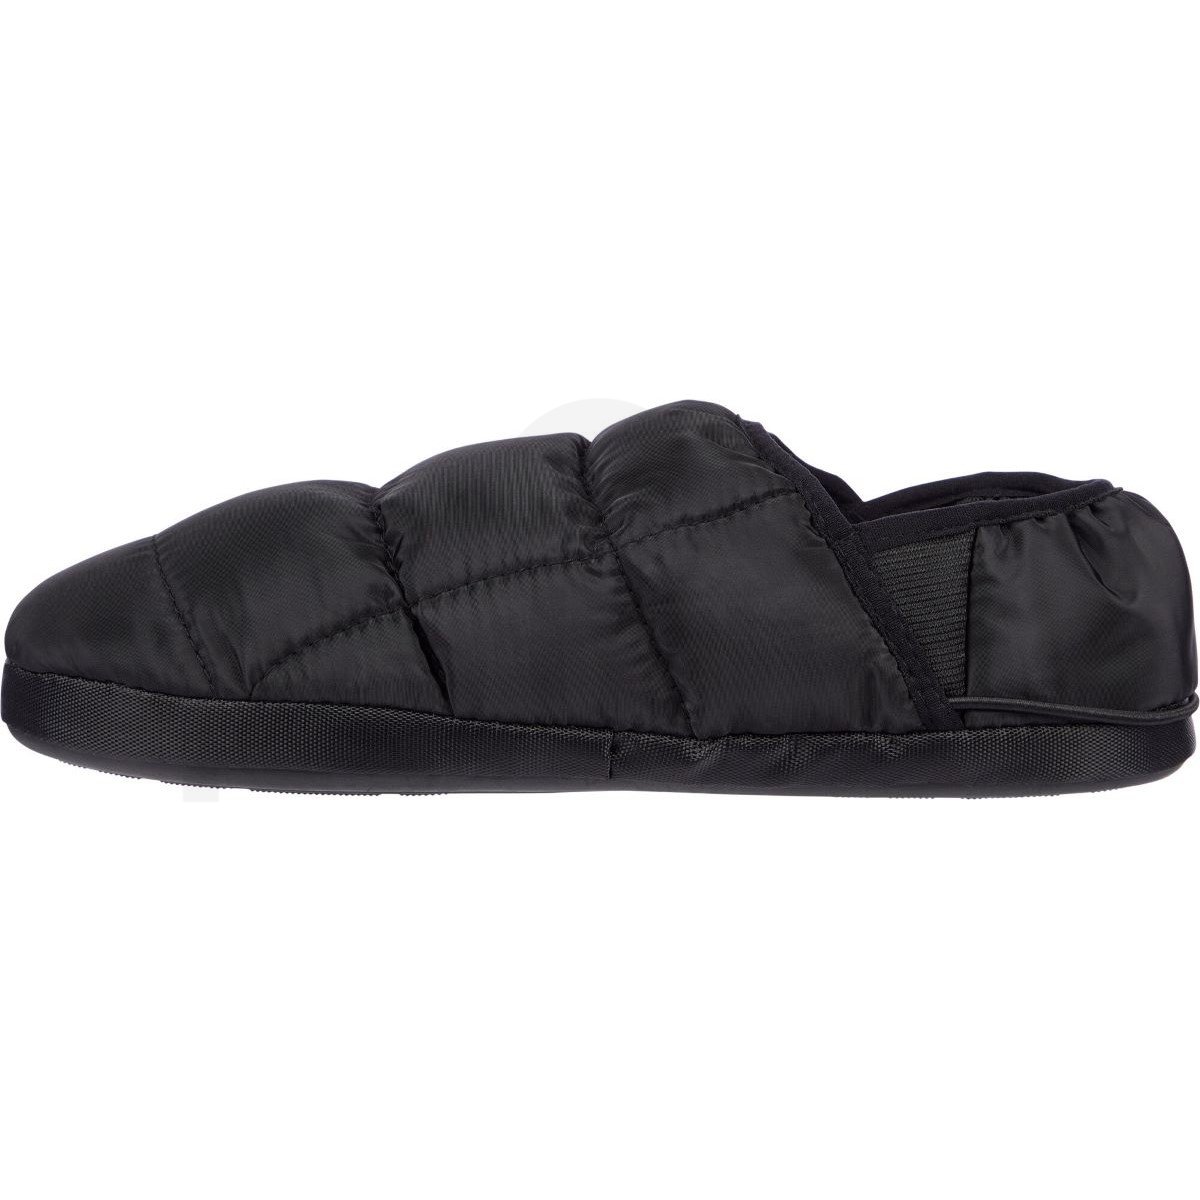 Pantofle zimní McKinley Roger - černá